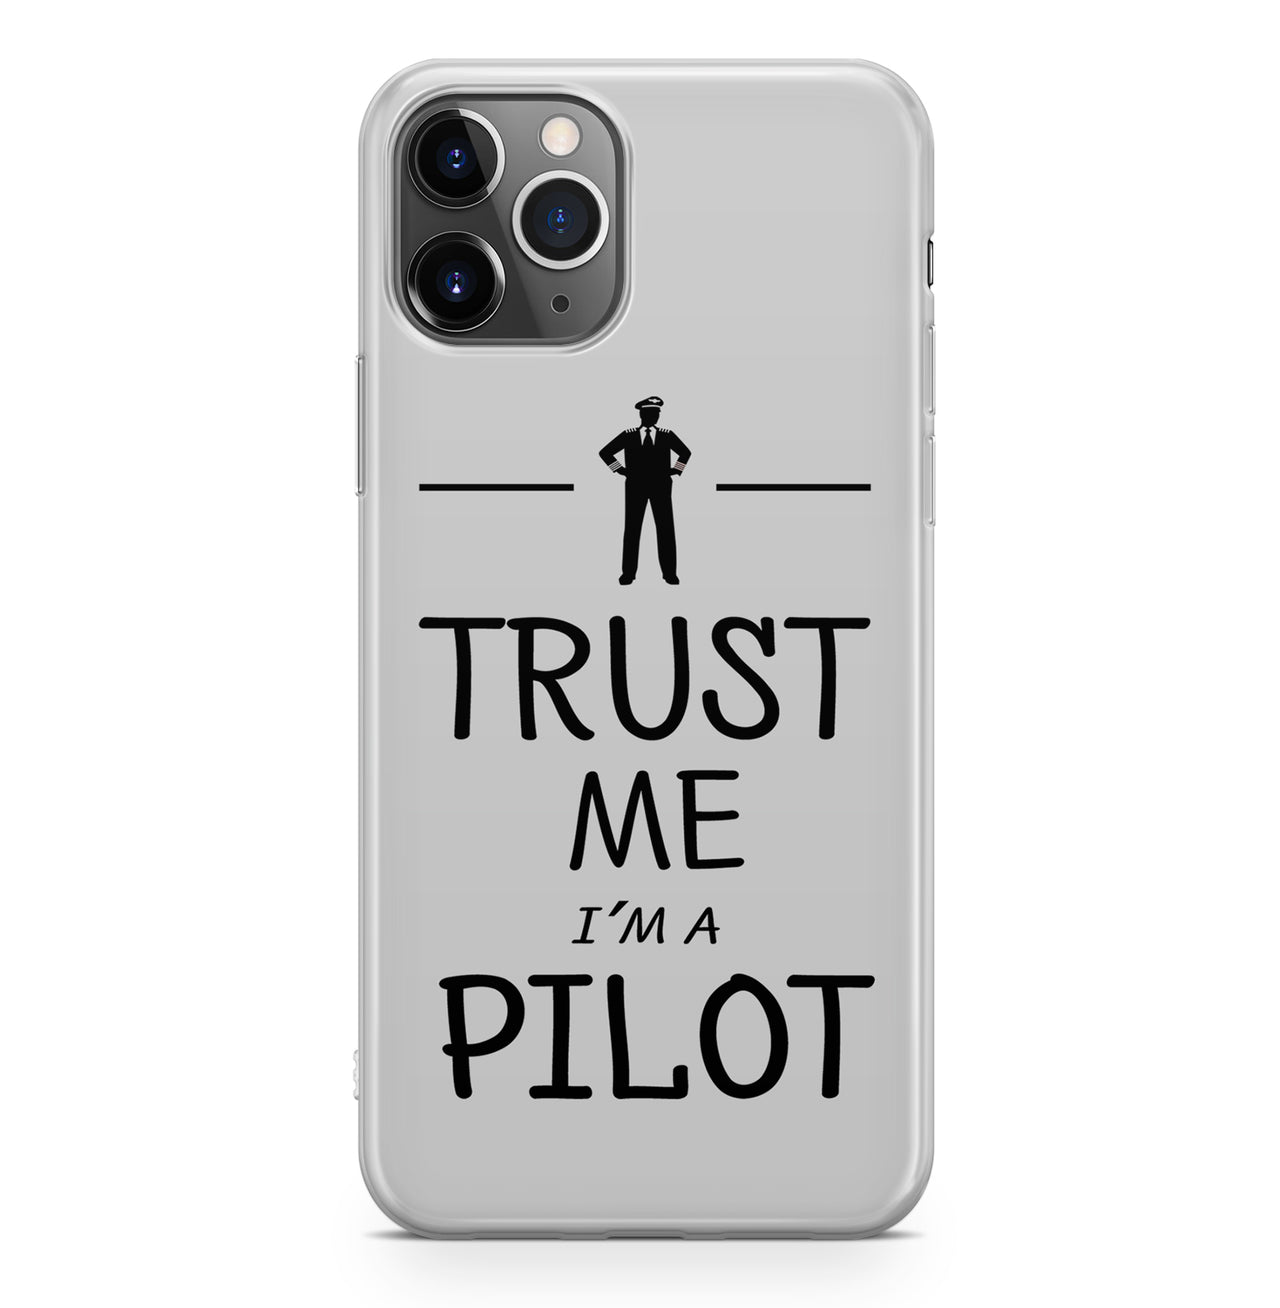 Trust Me I'm a Pilot Designed iPhone Cases